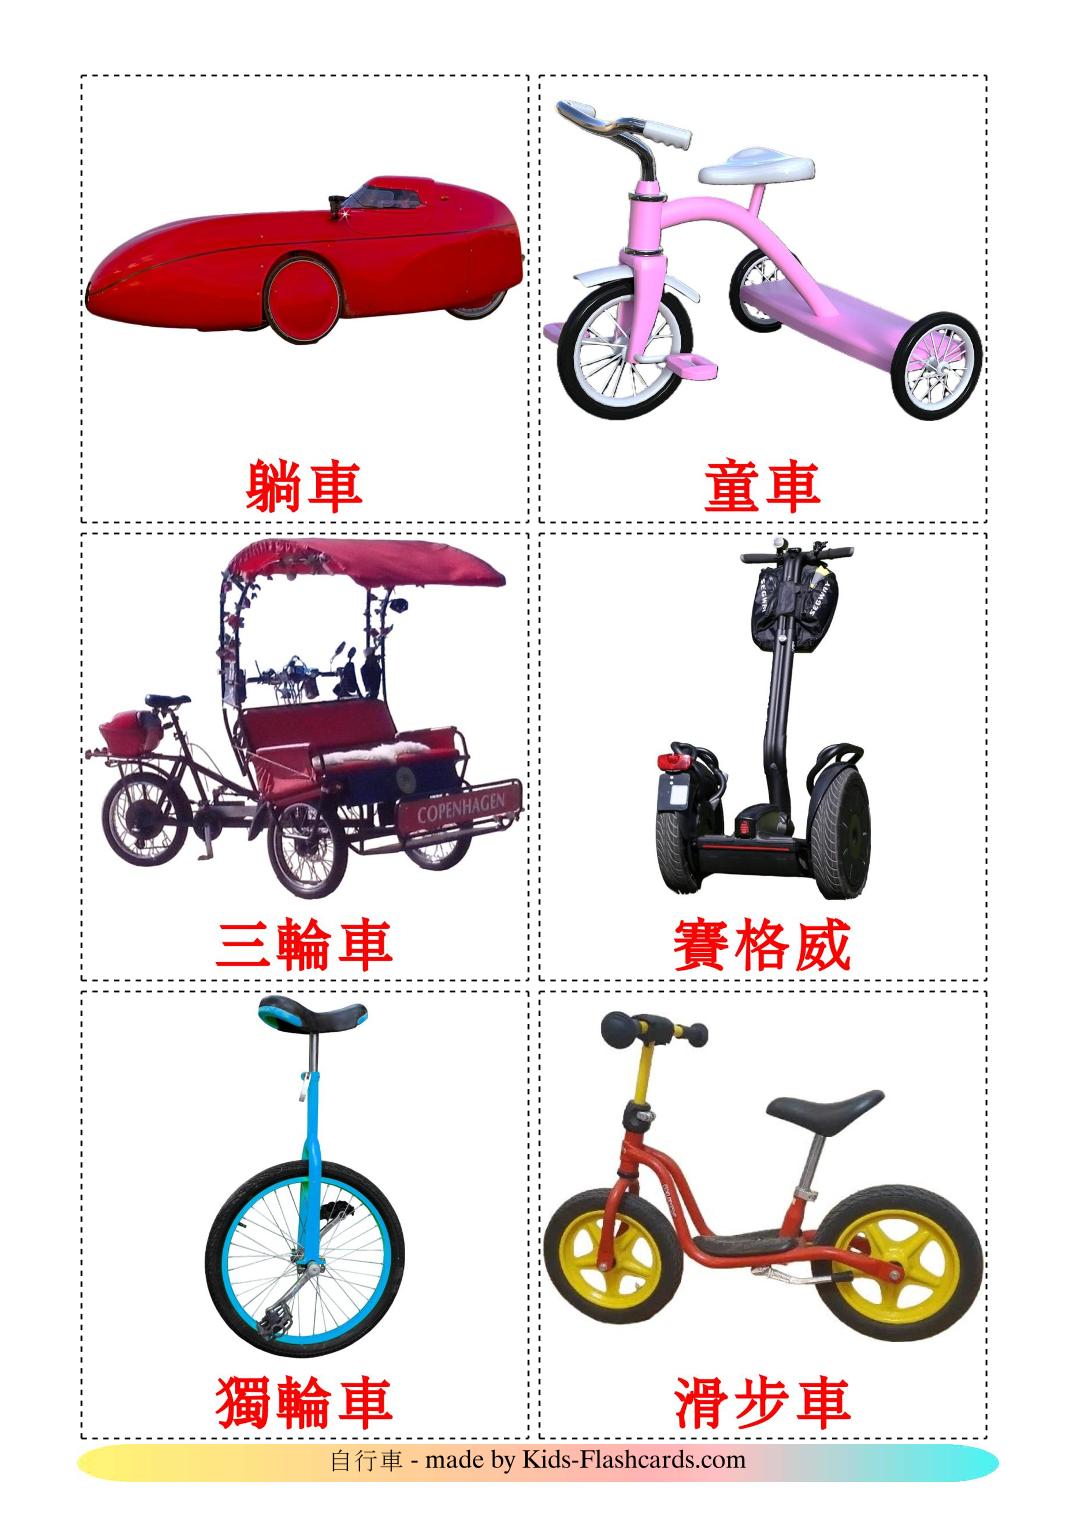 Trasporto di biciclette - 16 flashcards cinese(tradizionale) stampabili gratuitamente